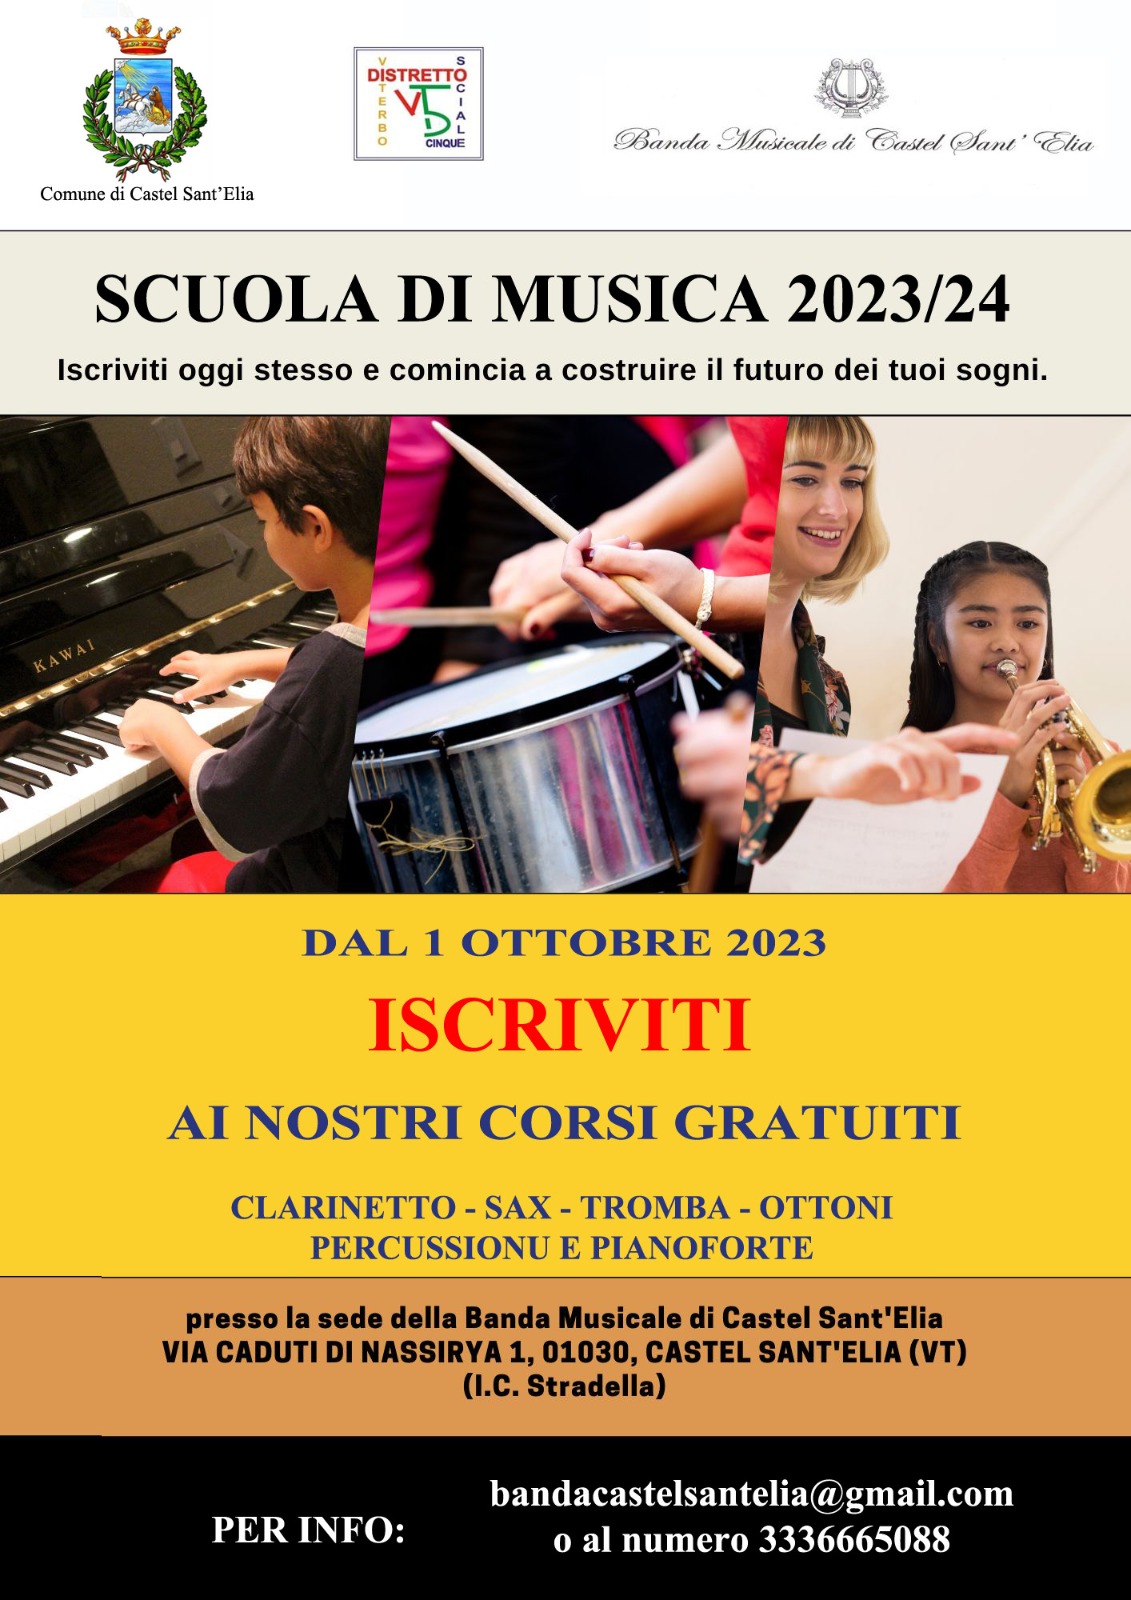 Scuola di musica 2023/2024